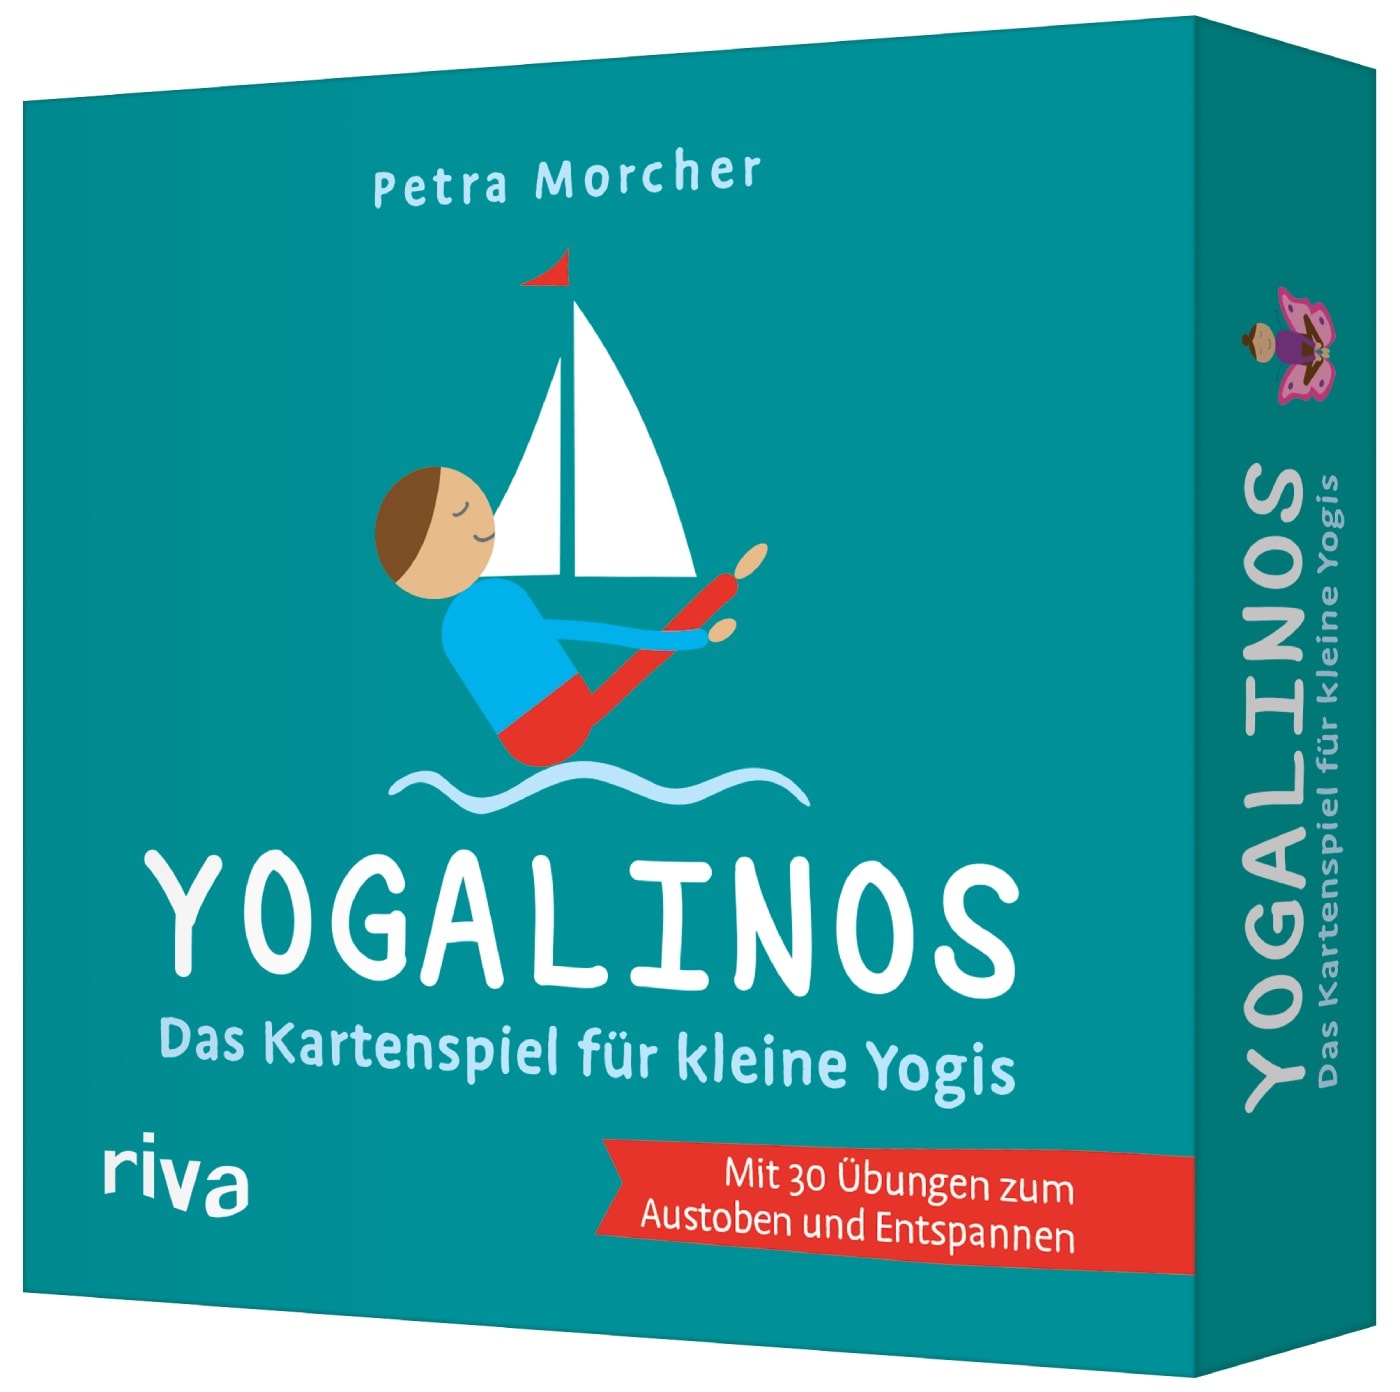 Kinder-Yoga-Spiel YOGALINOS im Test // HIMBEER